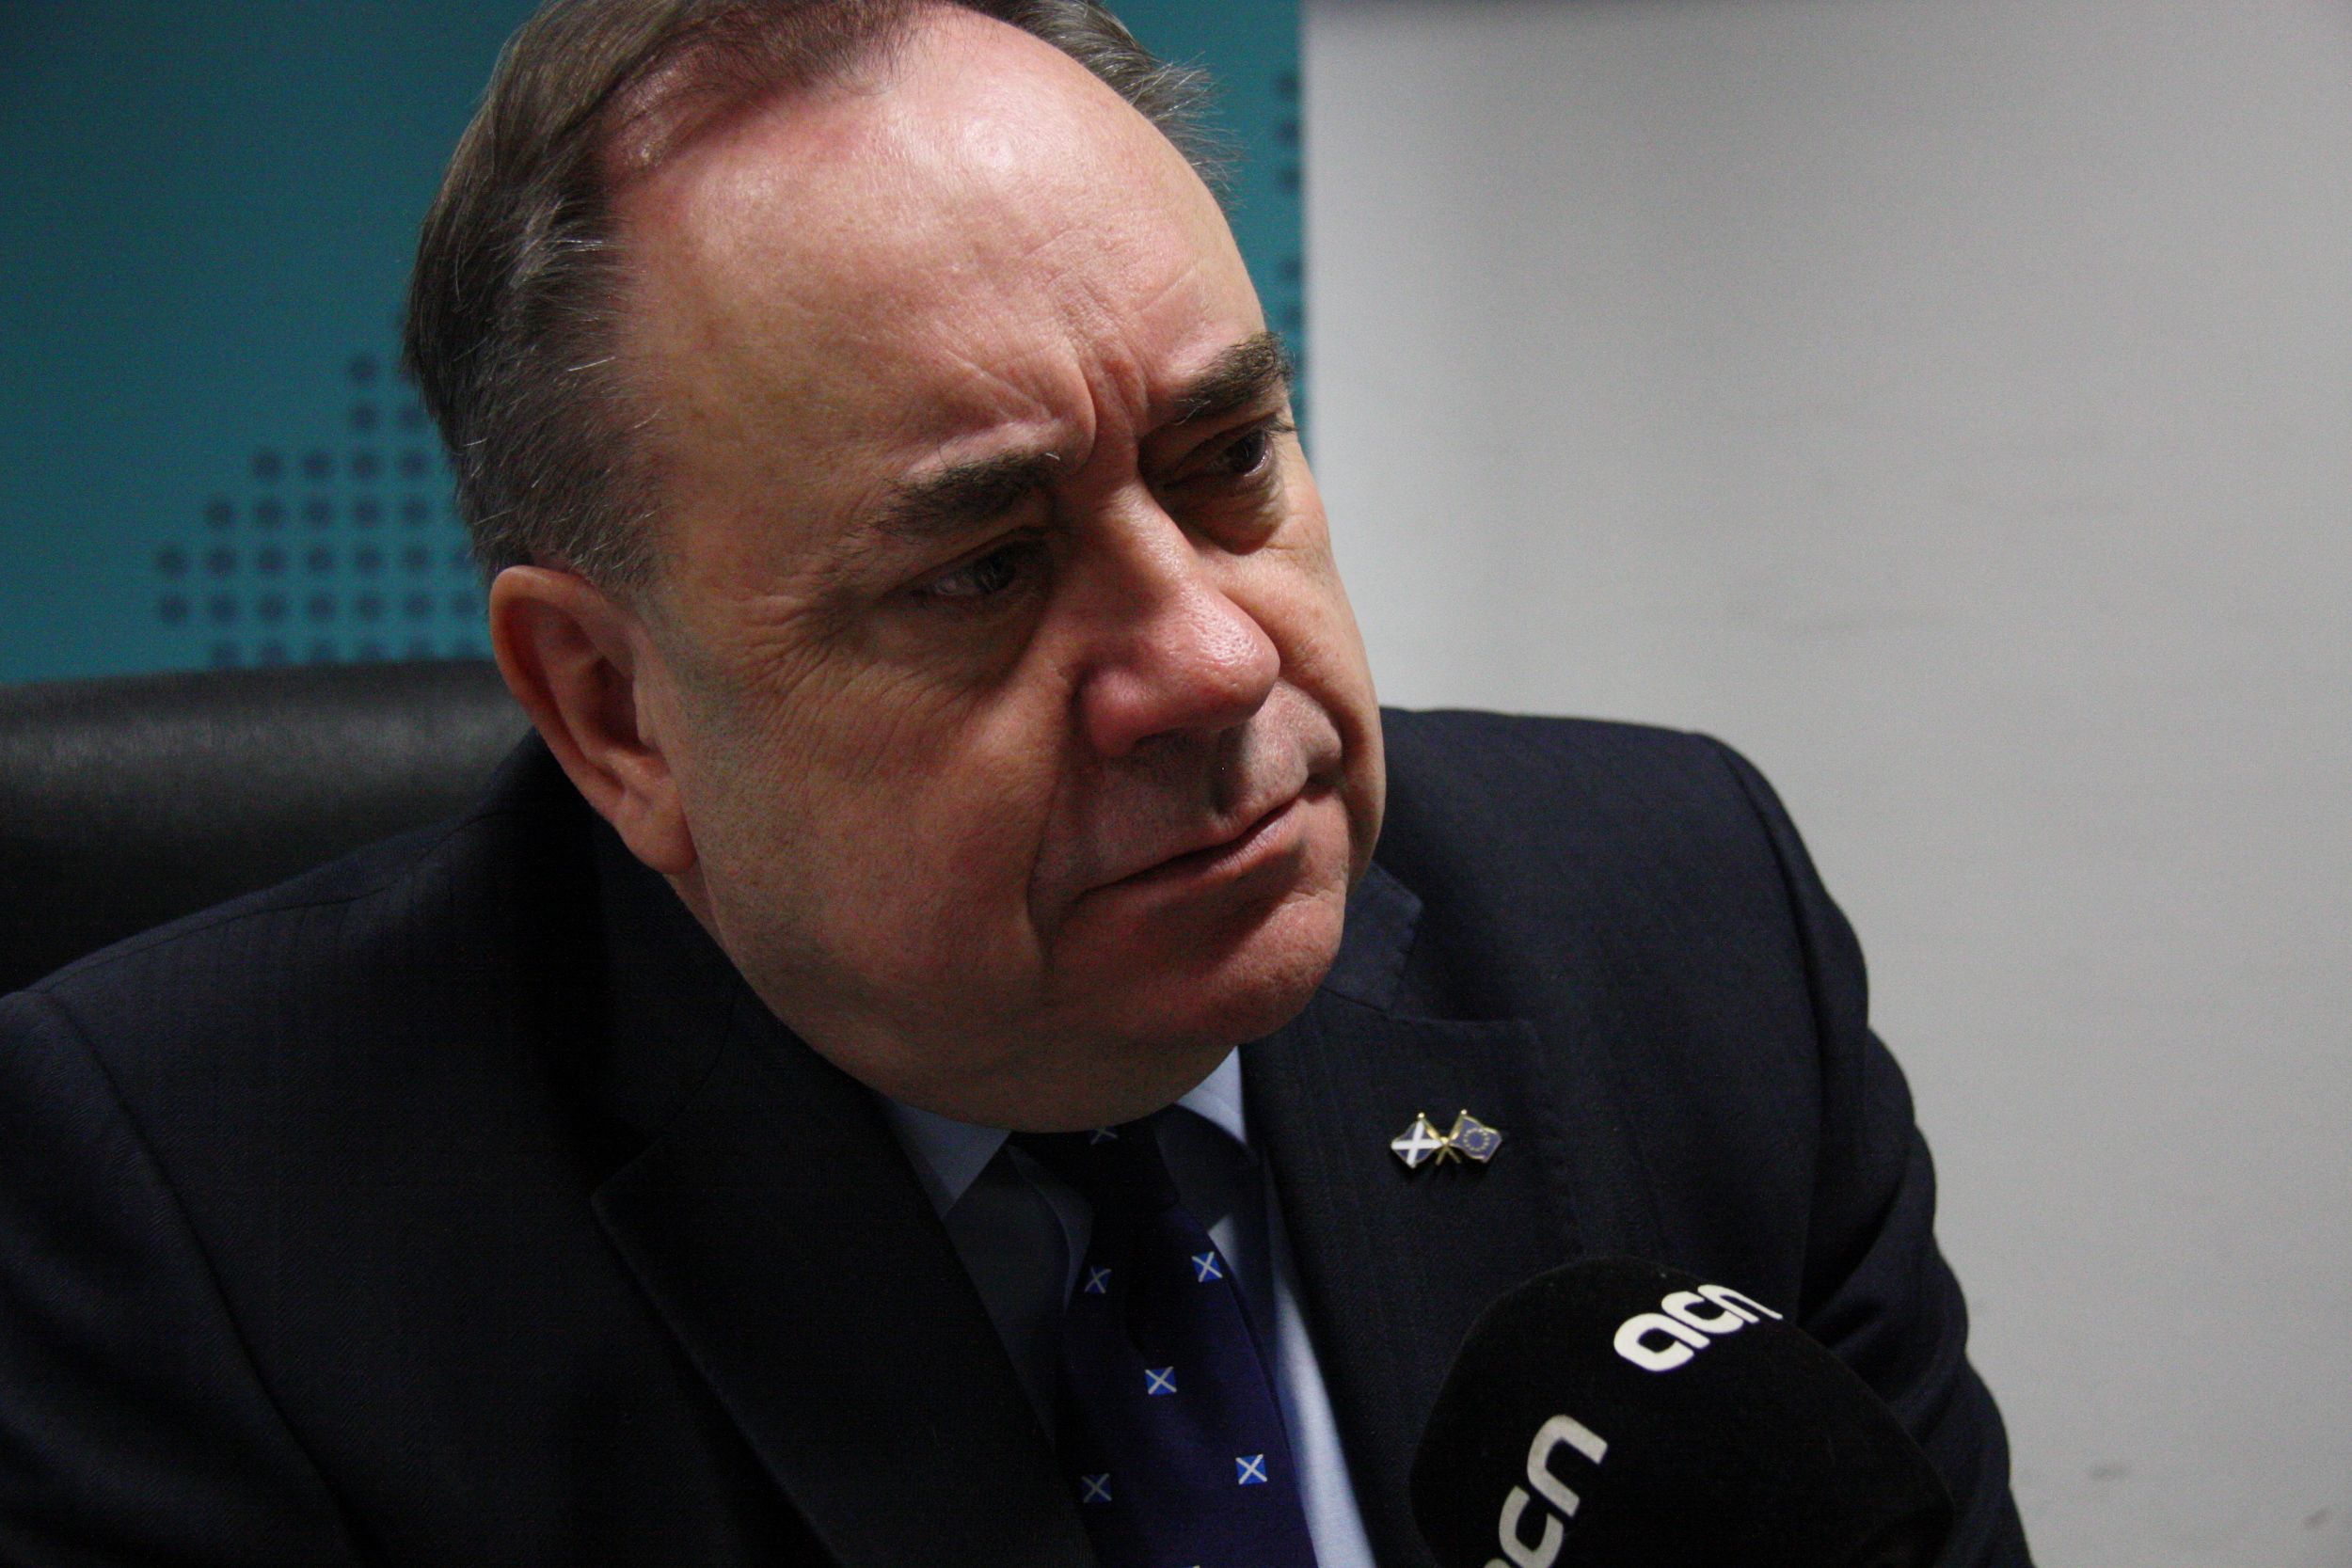 Salmond: "Mai m'hagués imaginat aquest comportament de la policia espanyola"